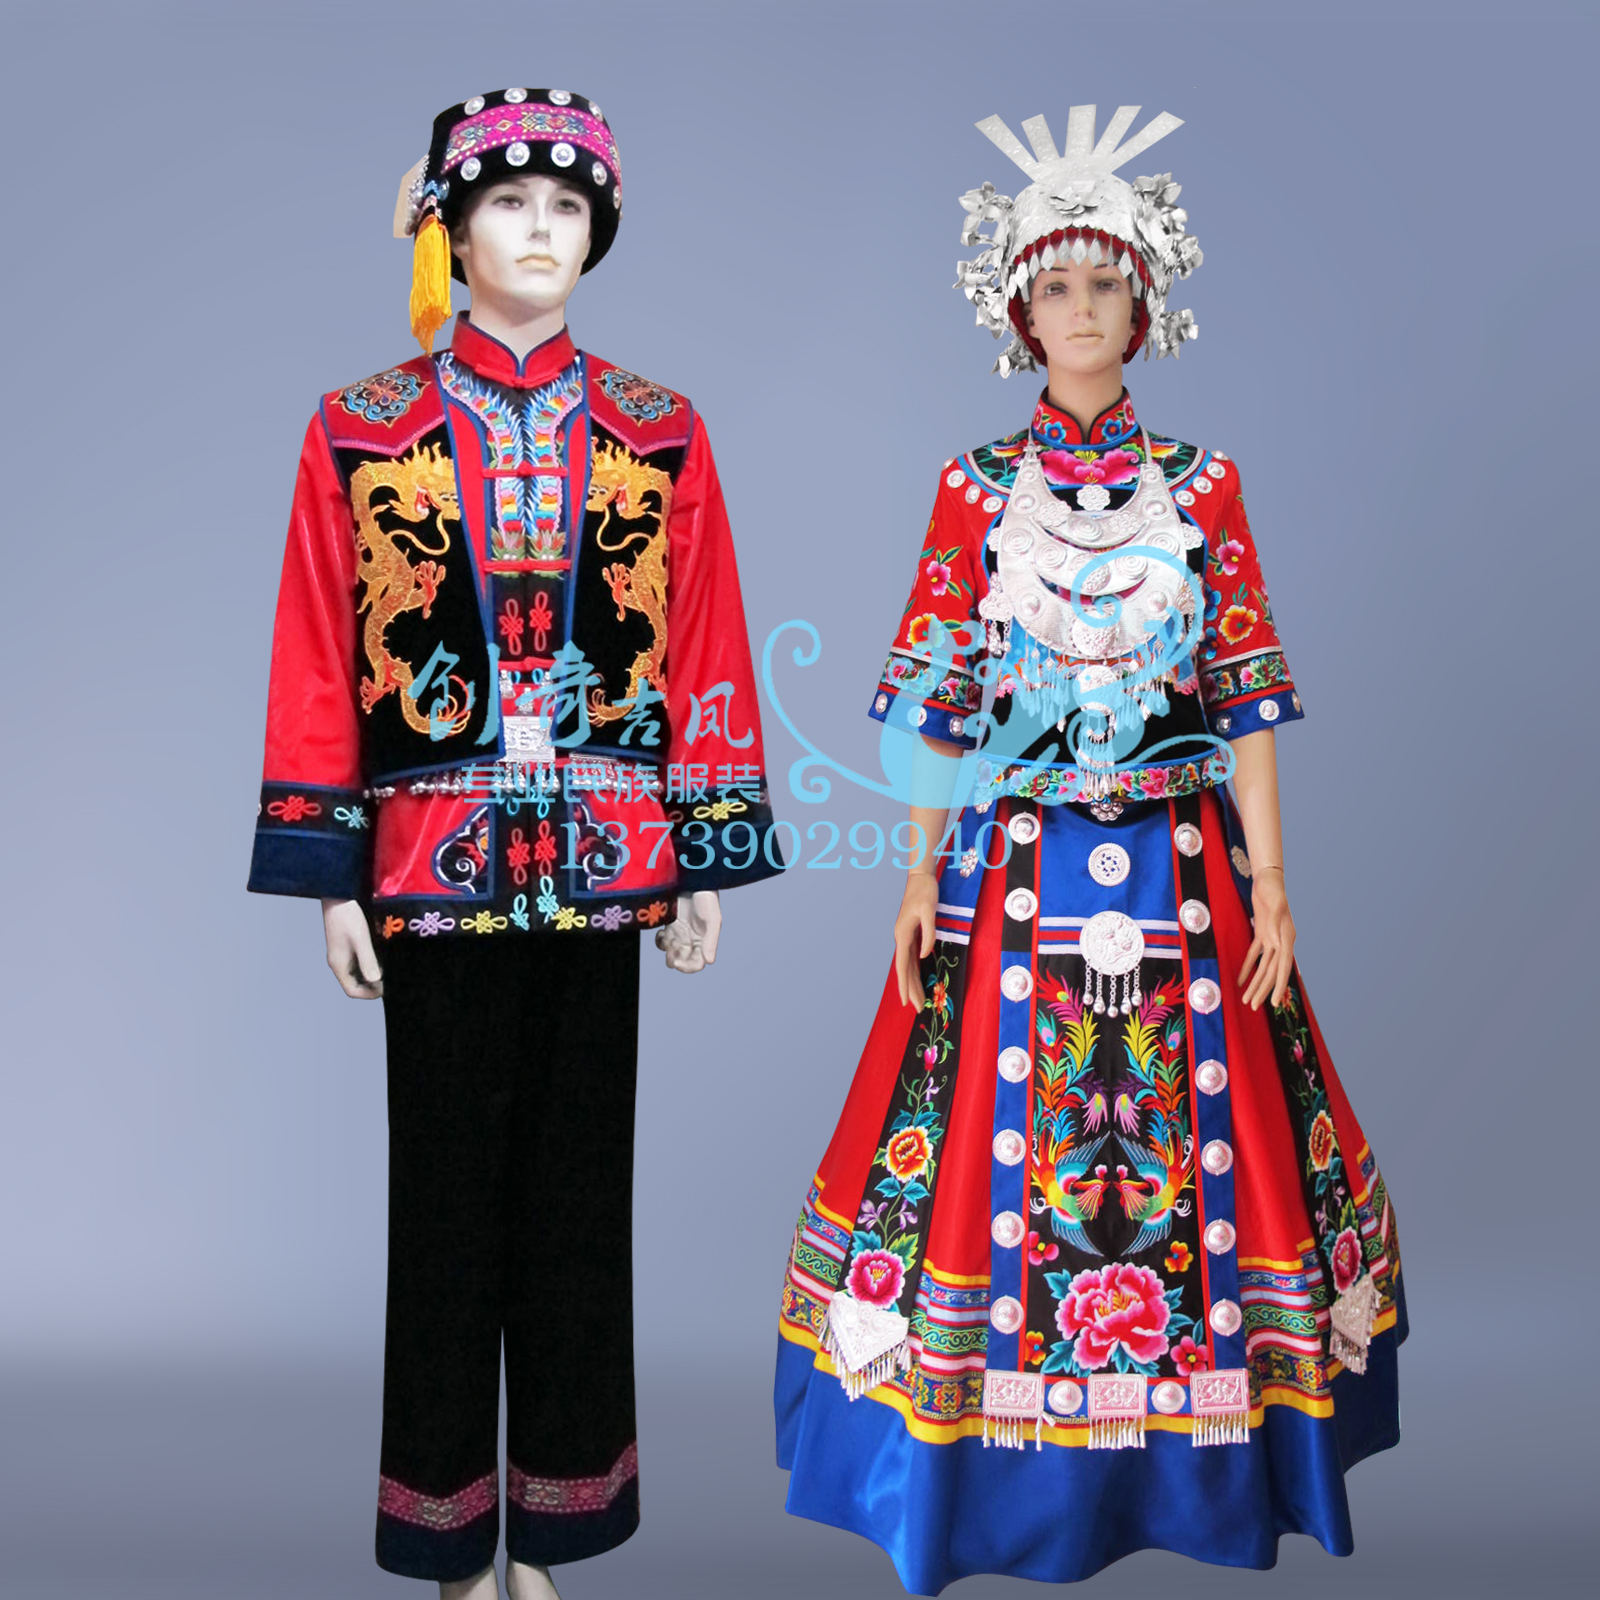 男式苗族服装 苗族盛装刺绣结婚服装 56个民族舞蹈演出服饰